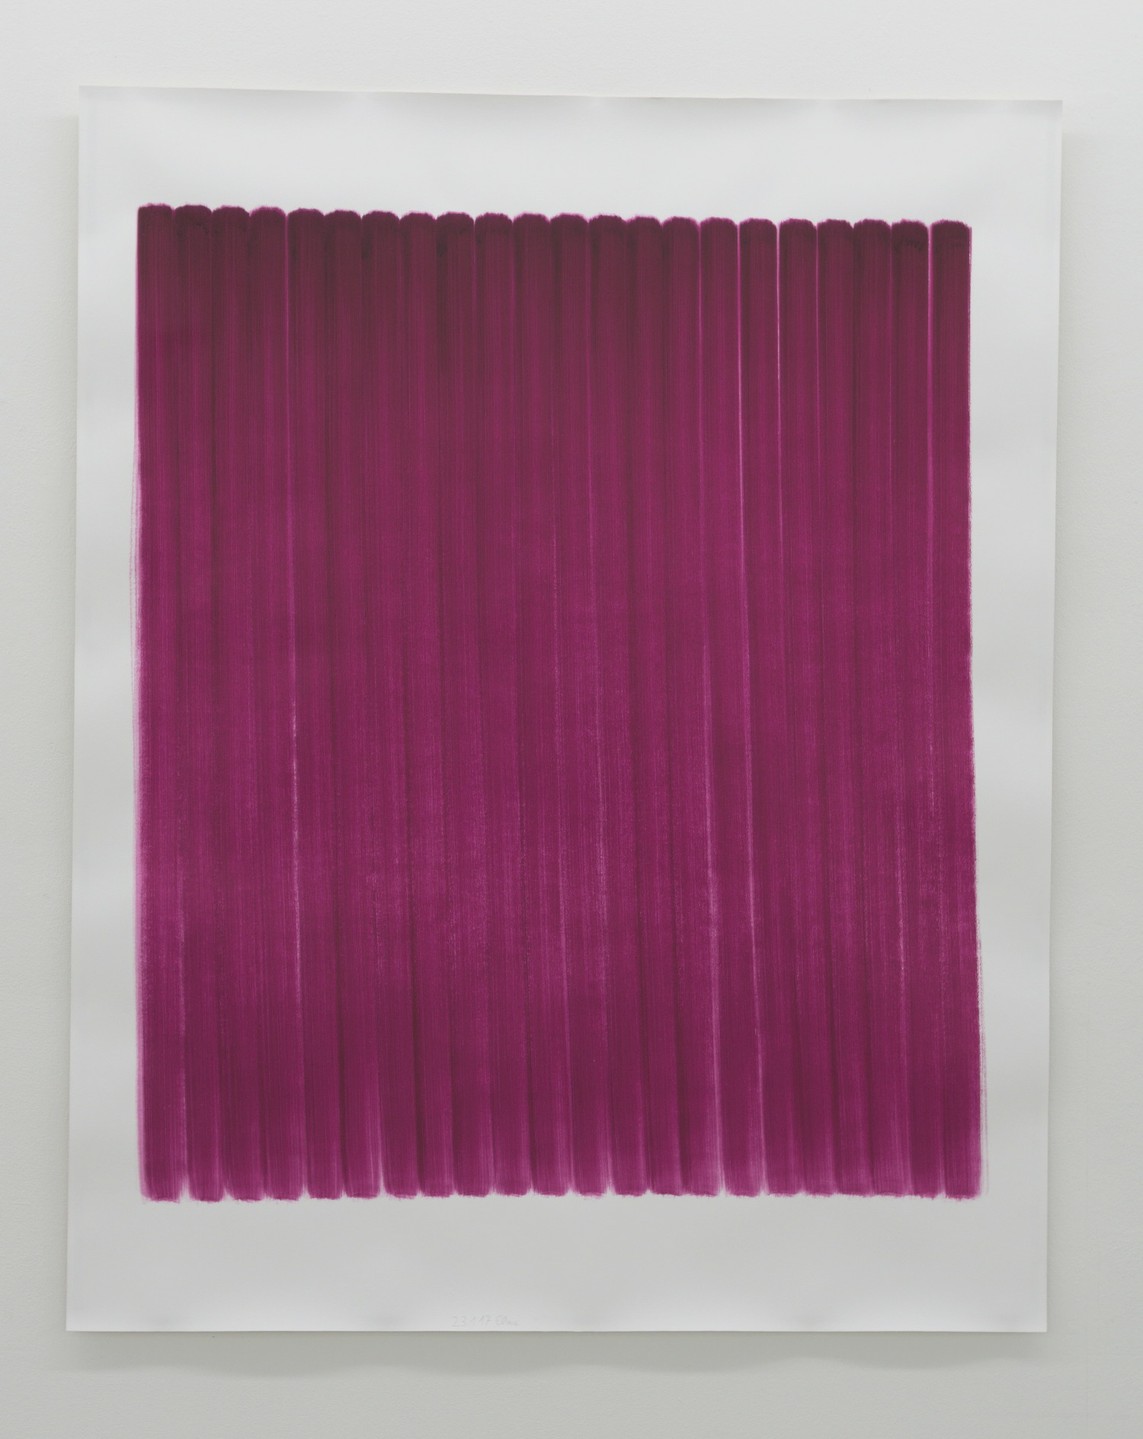 o.T. (23.1.17), Aquarell auf Papier, 2017, 192 x 152 cm 